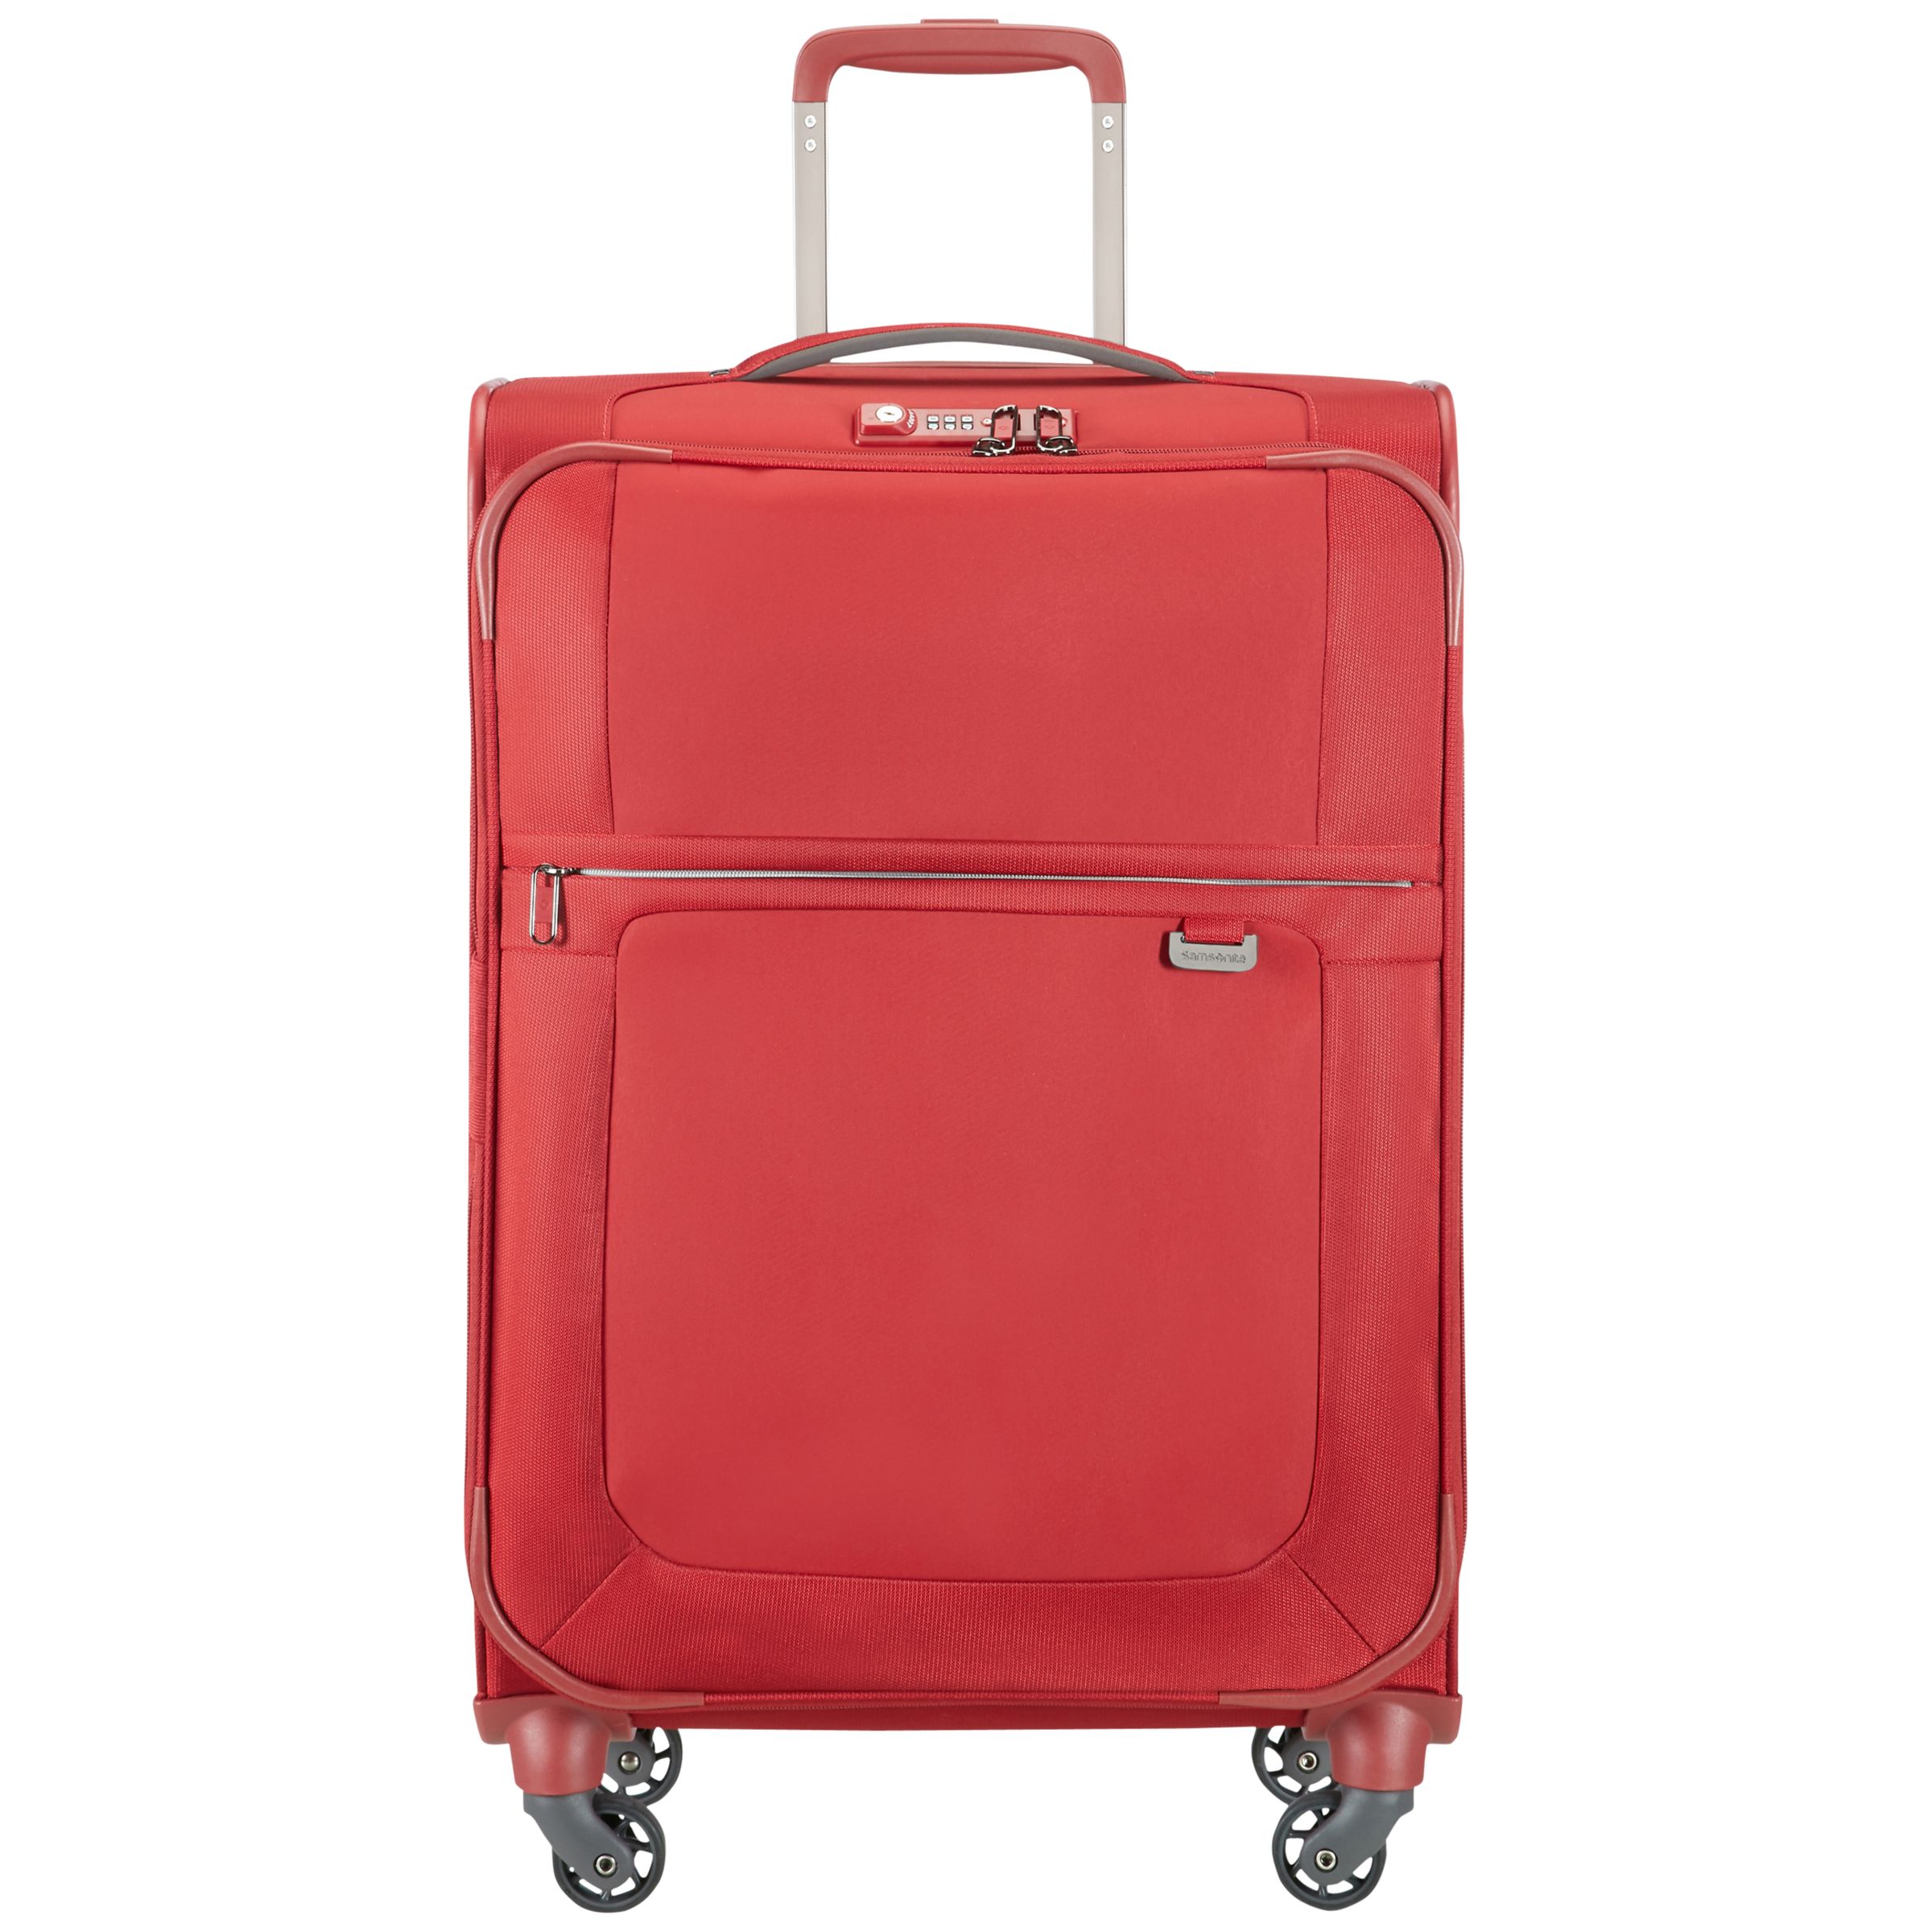 Samsonite Uplite 4-Wheel 67cm Spinner Suitcase, Red at John Lewis ...